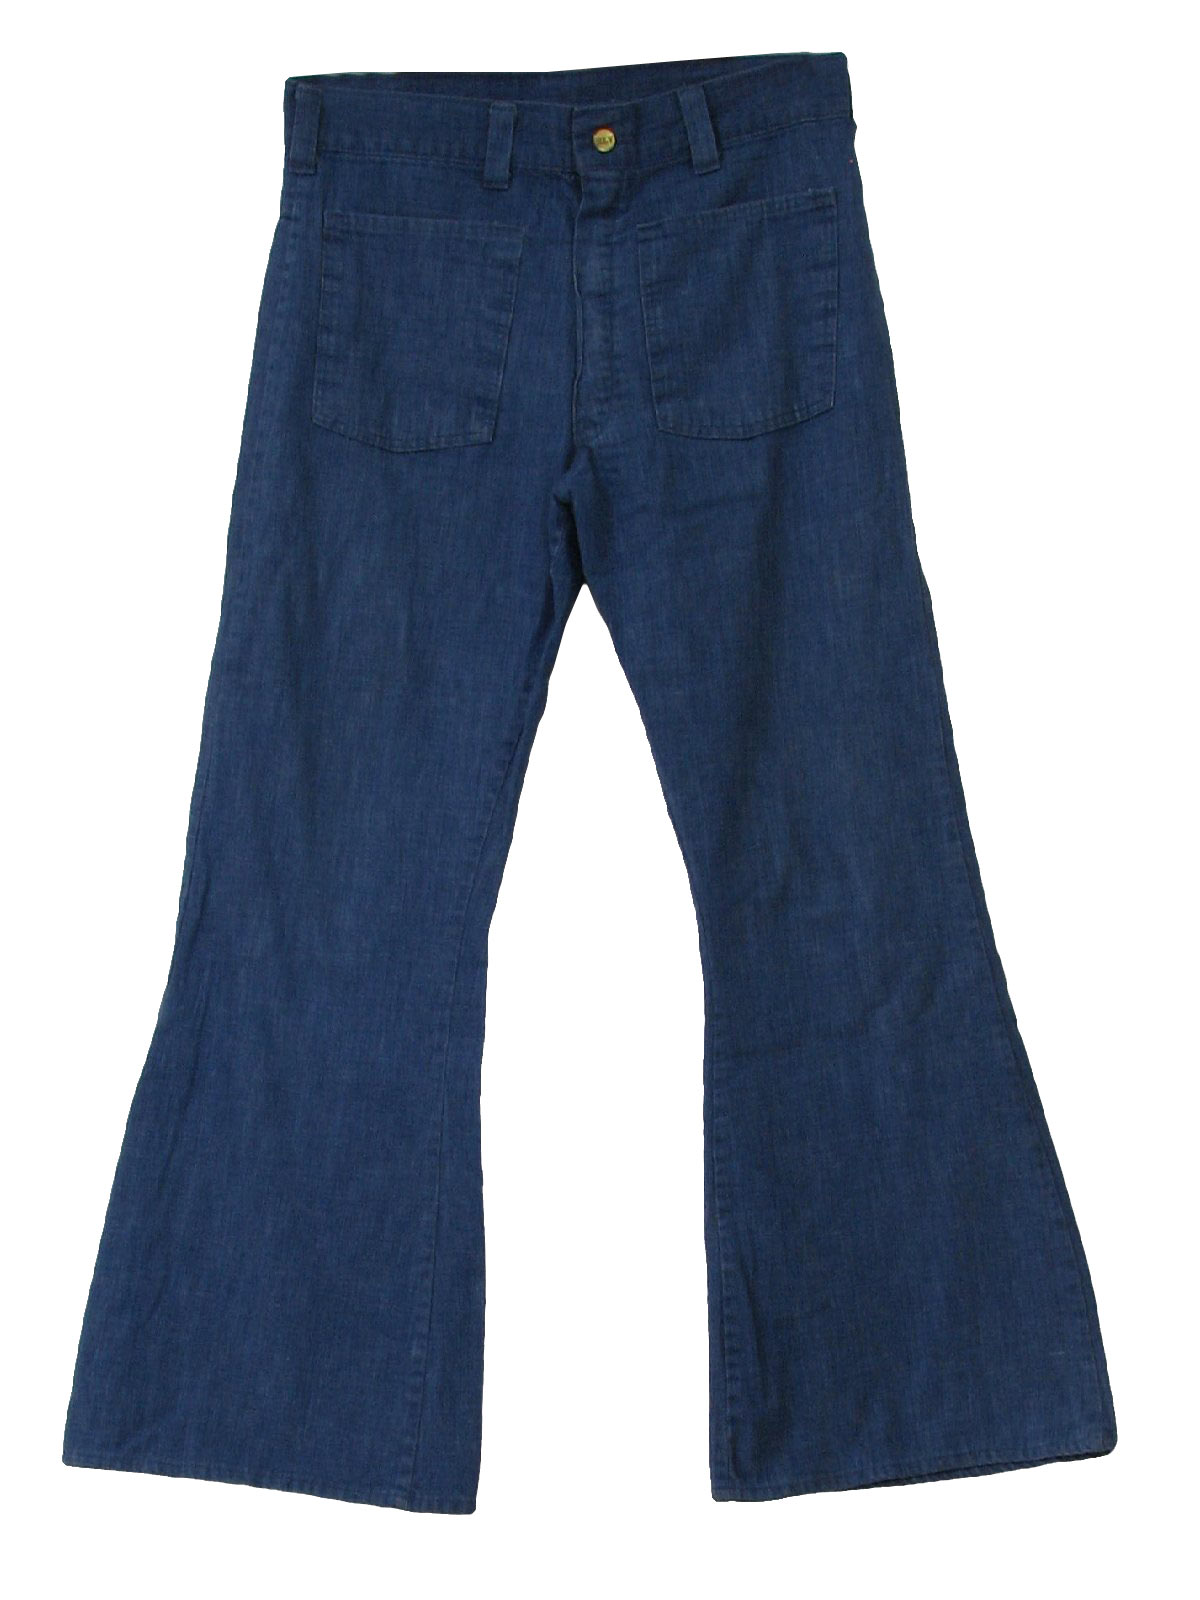 70's Vintage Bellbottom Pants: 70s -Ely- Mens blue cotton blend denim ...